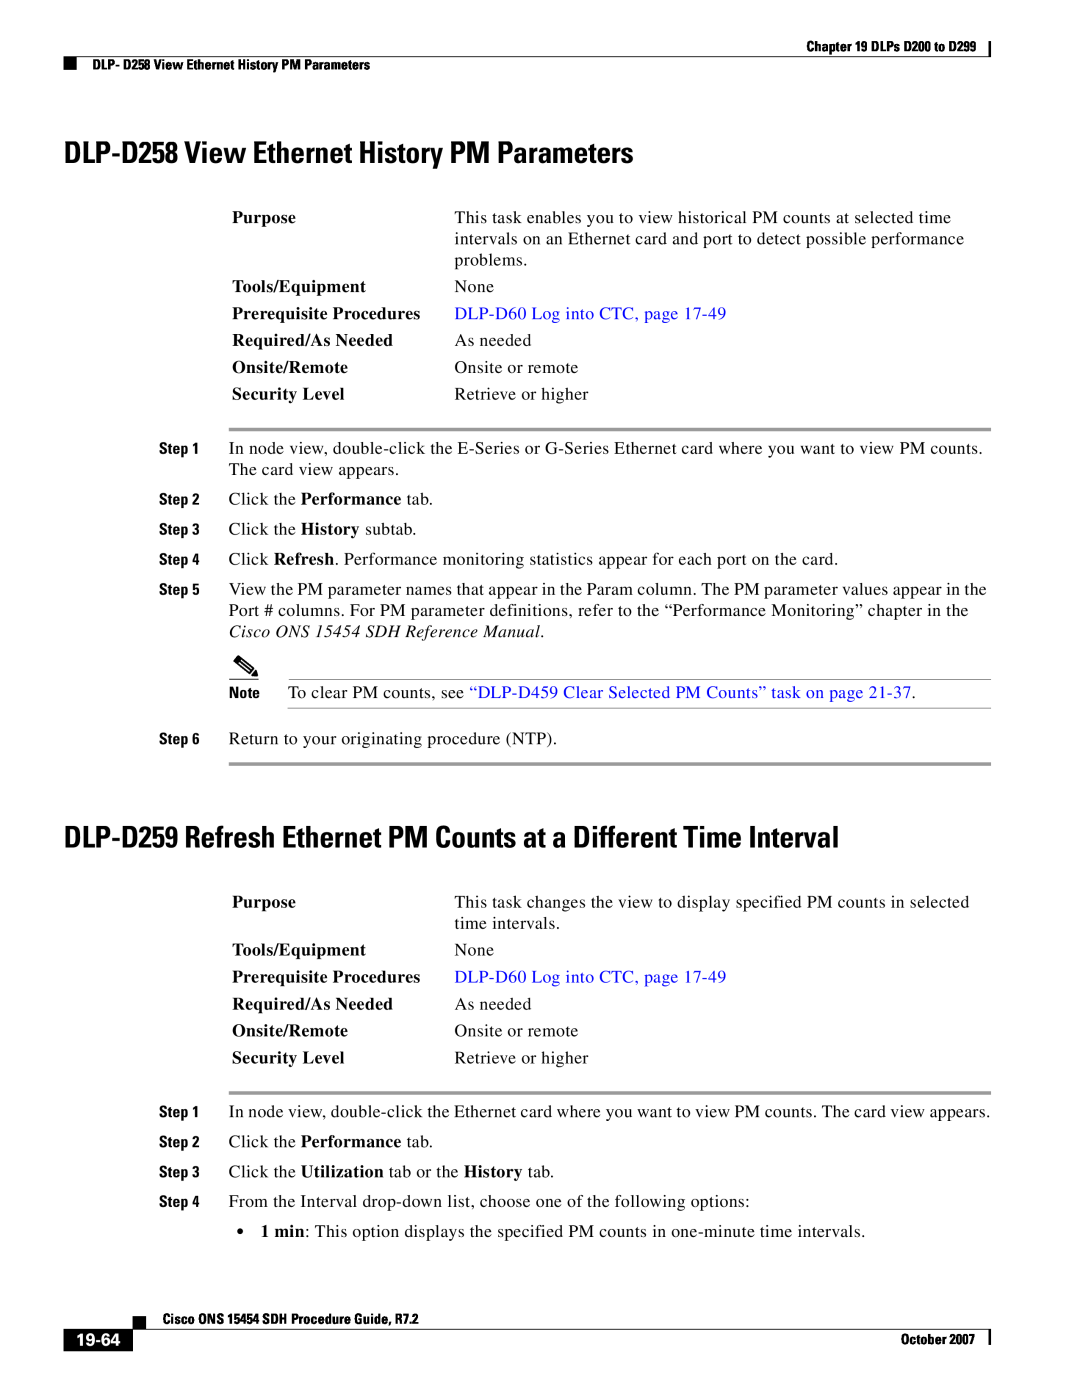 Cisco Systems D200 manual DLP-D258 View Ethernet History PM Parameters, 19-64, DLP-D60 Log into CTC, page 